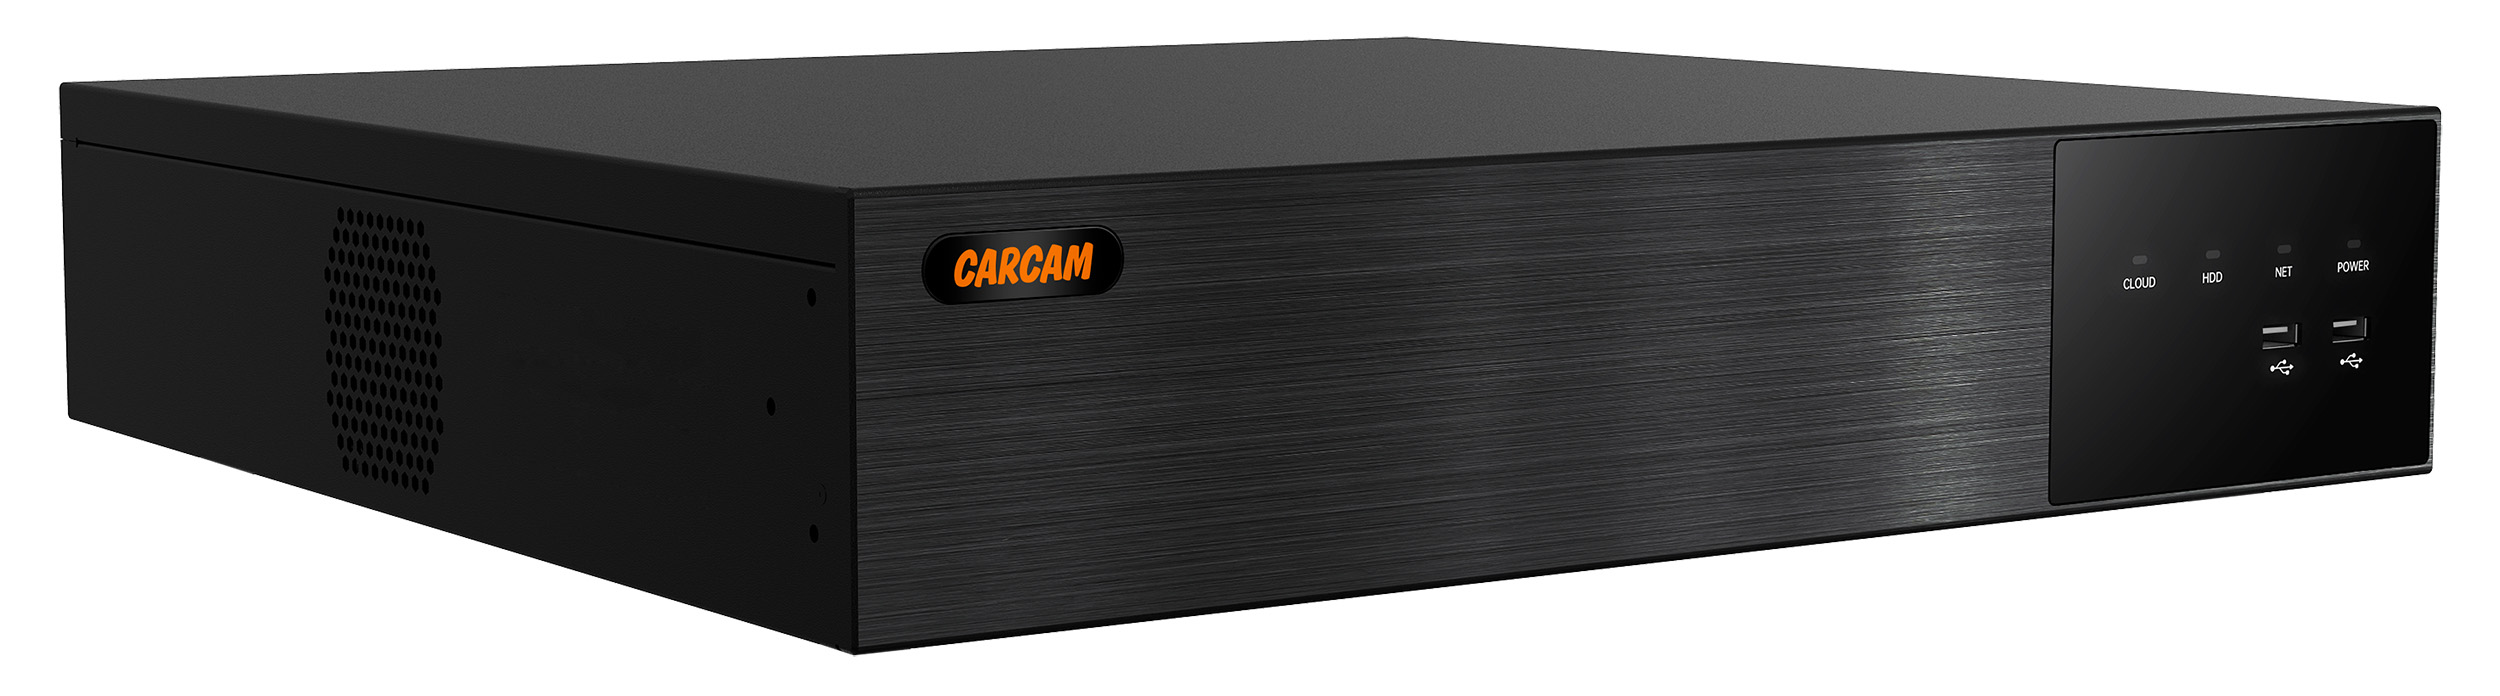 64-канальный IP-видеорегистратор CARCAM 64CH NVR 8764